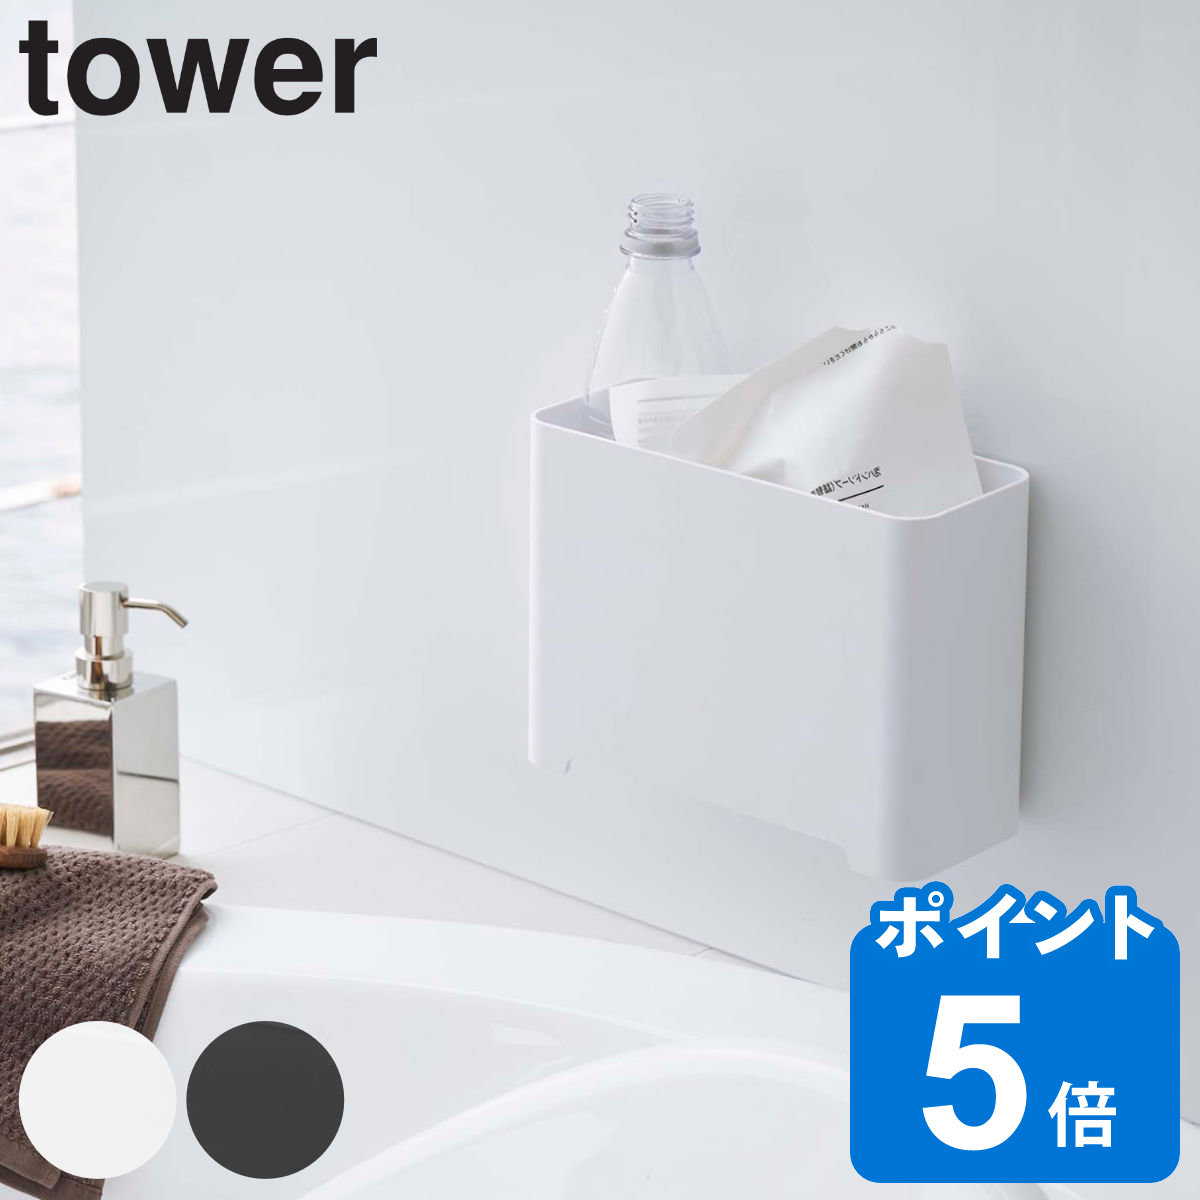 tower マグネットバスルームゴミ箱